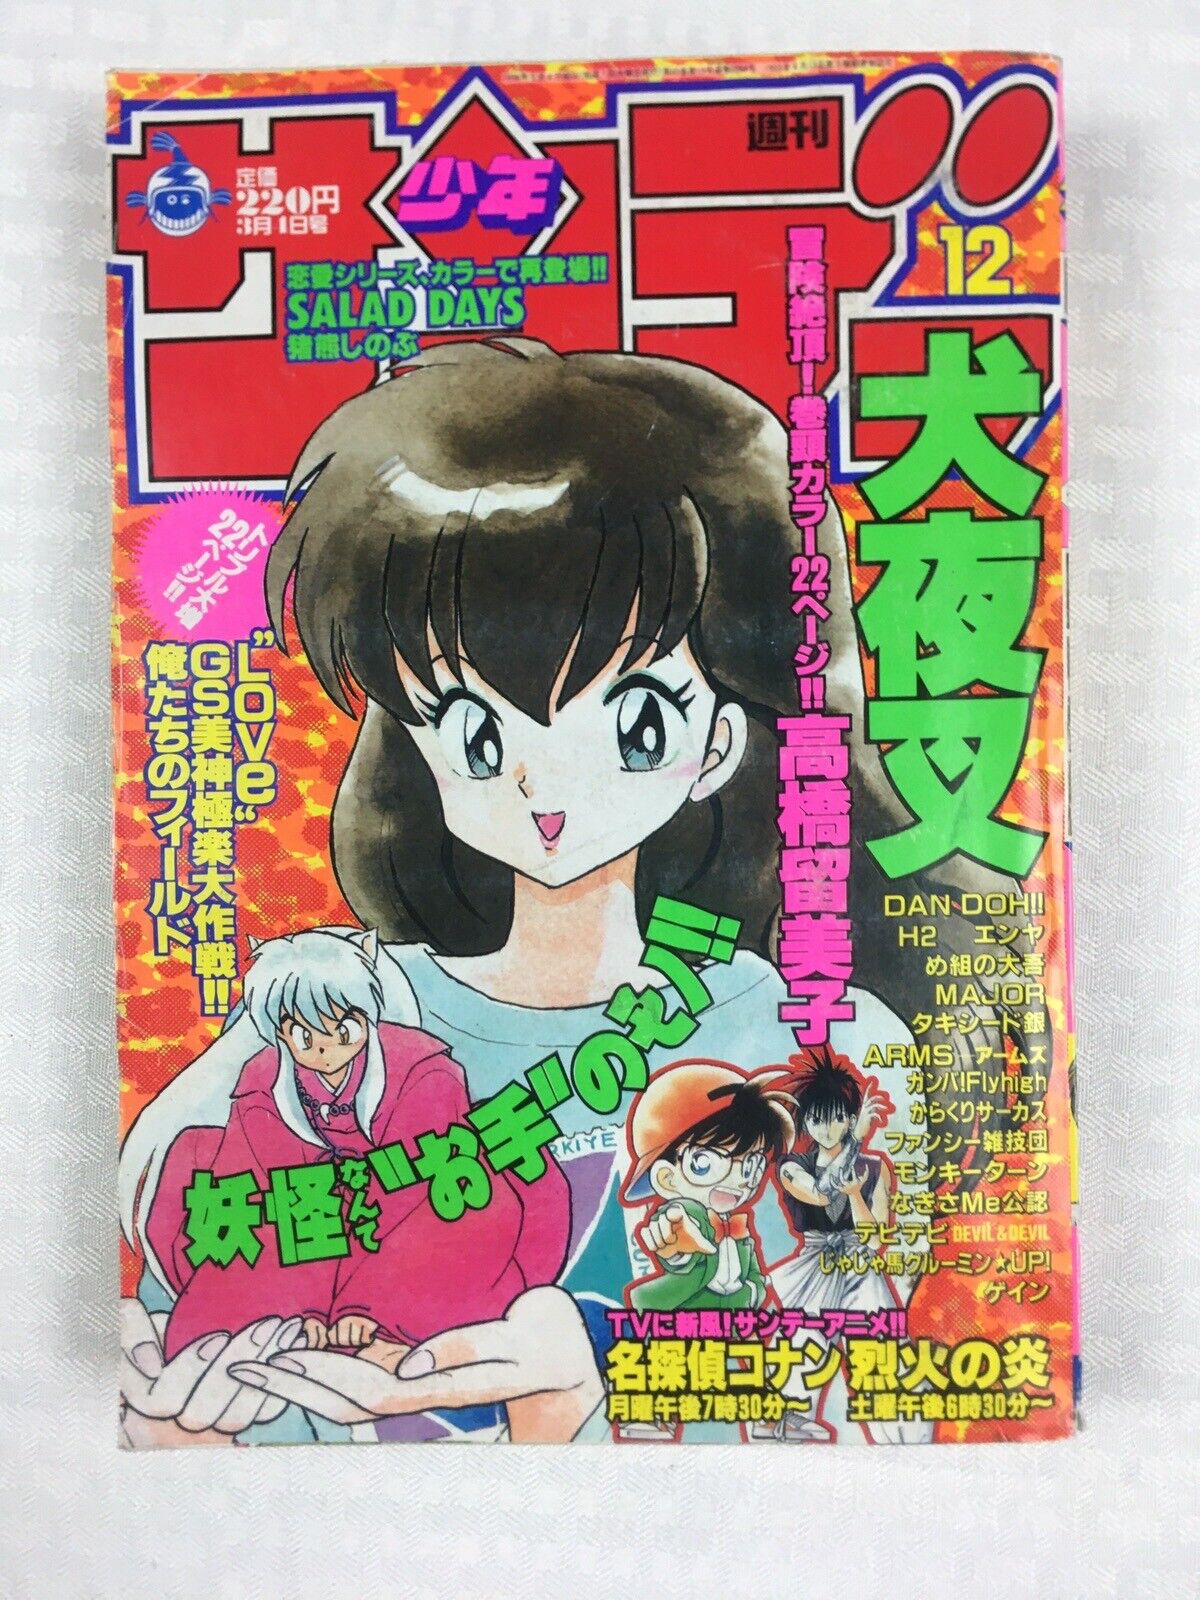 Weekly Sho Sunday 1998 #12 Inuyasha Cover Issue